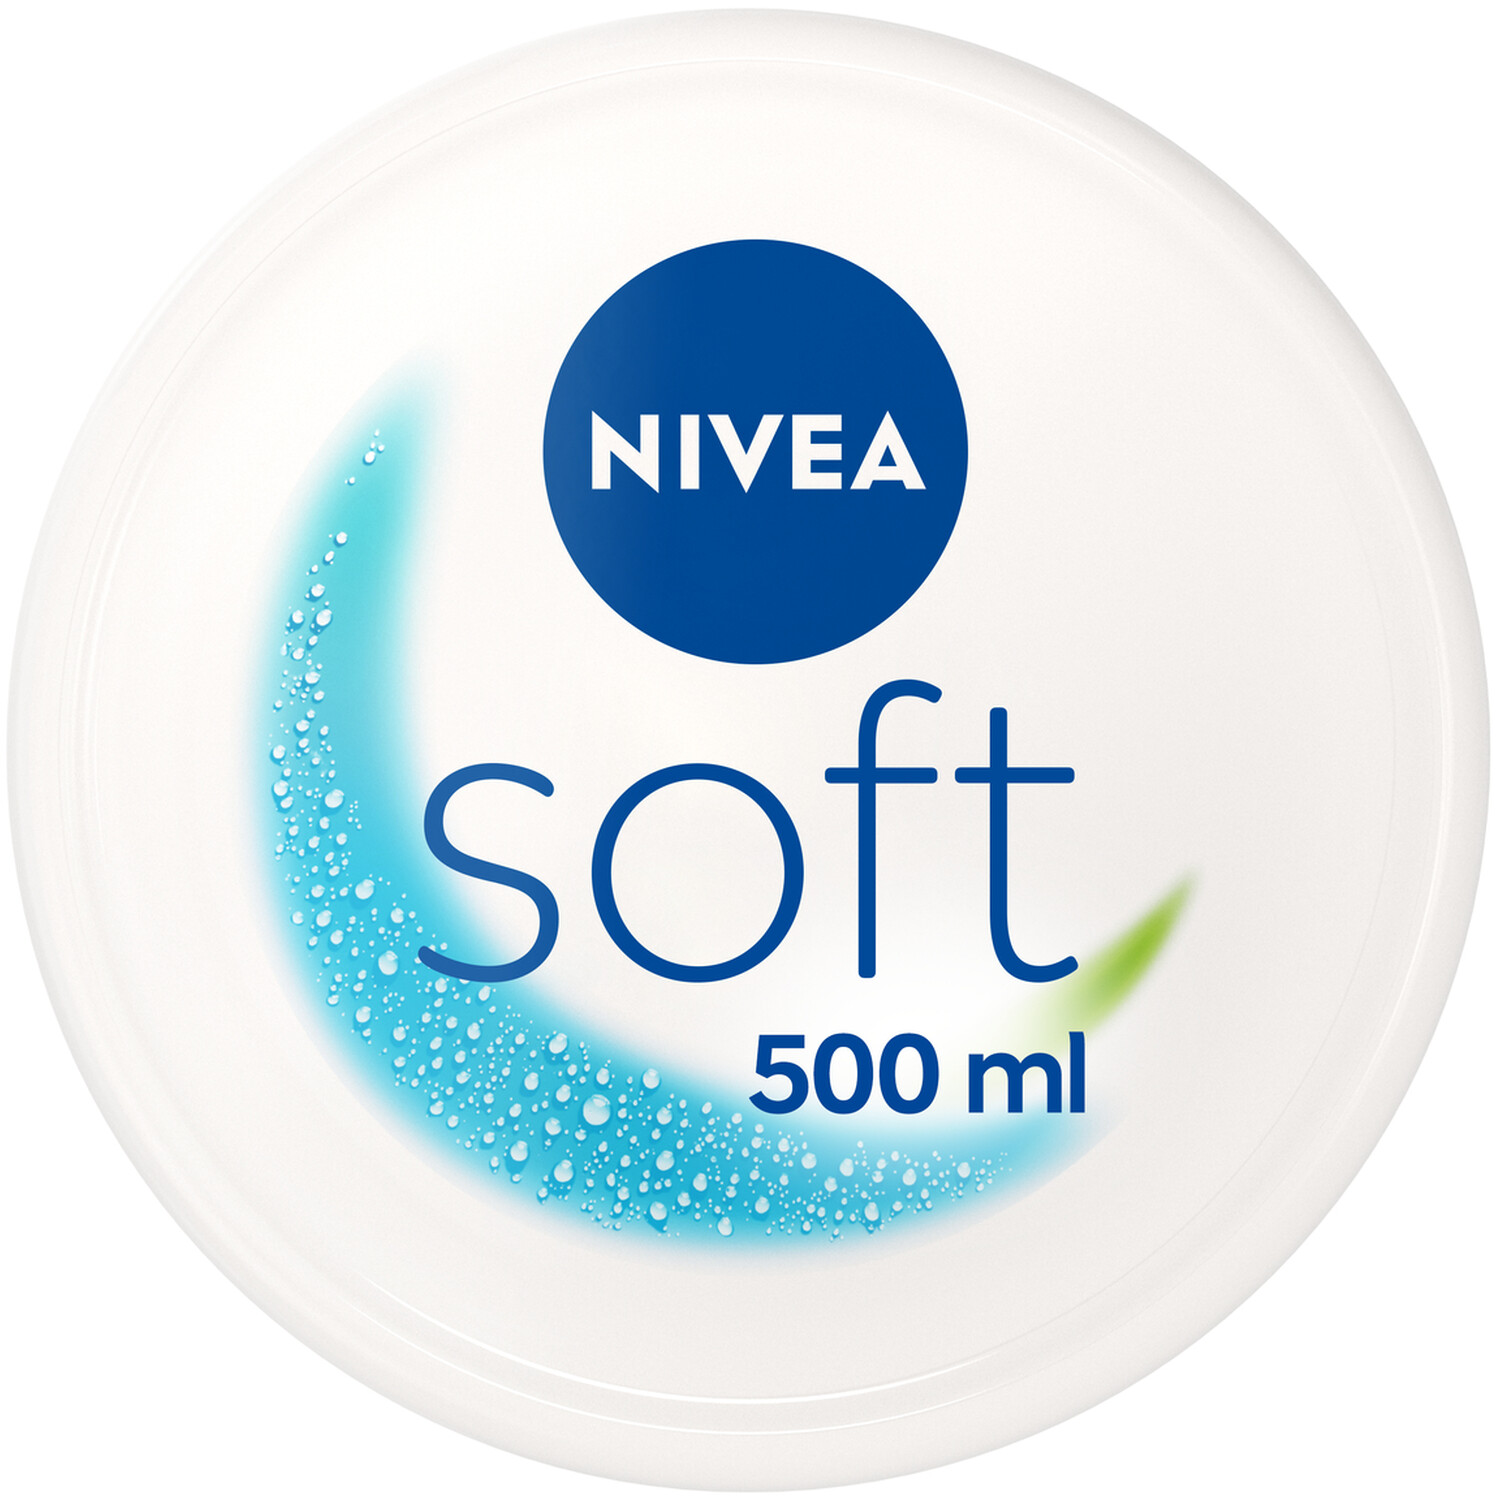 Nivea Soft Refresh Cream 500ml - White Image